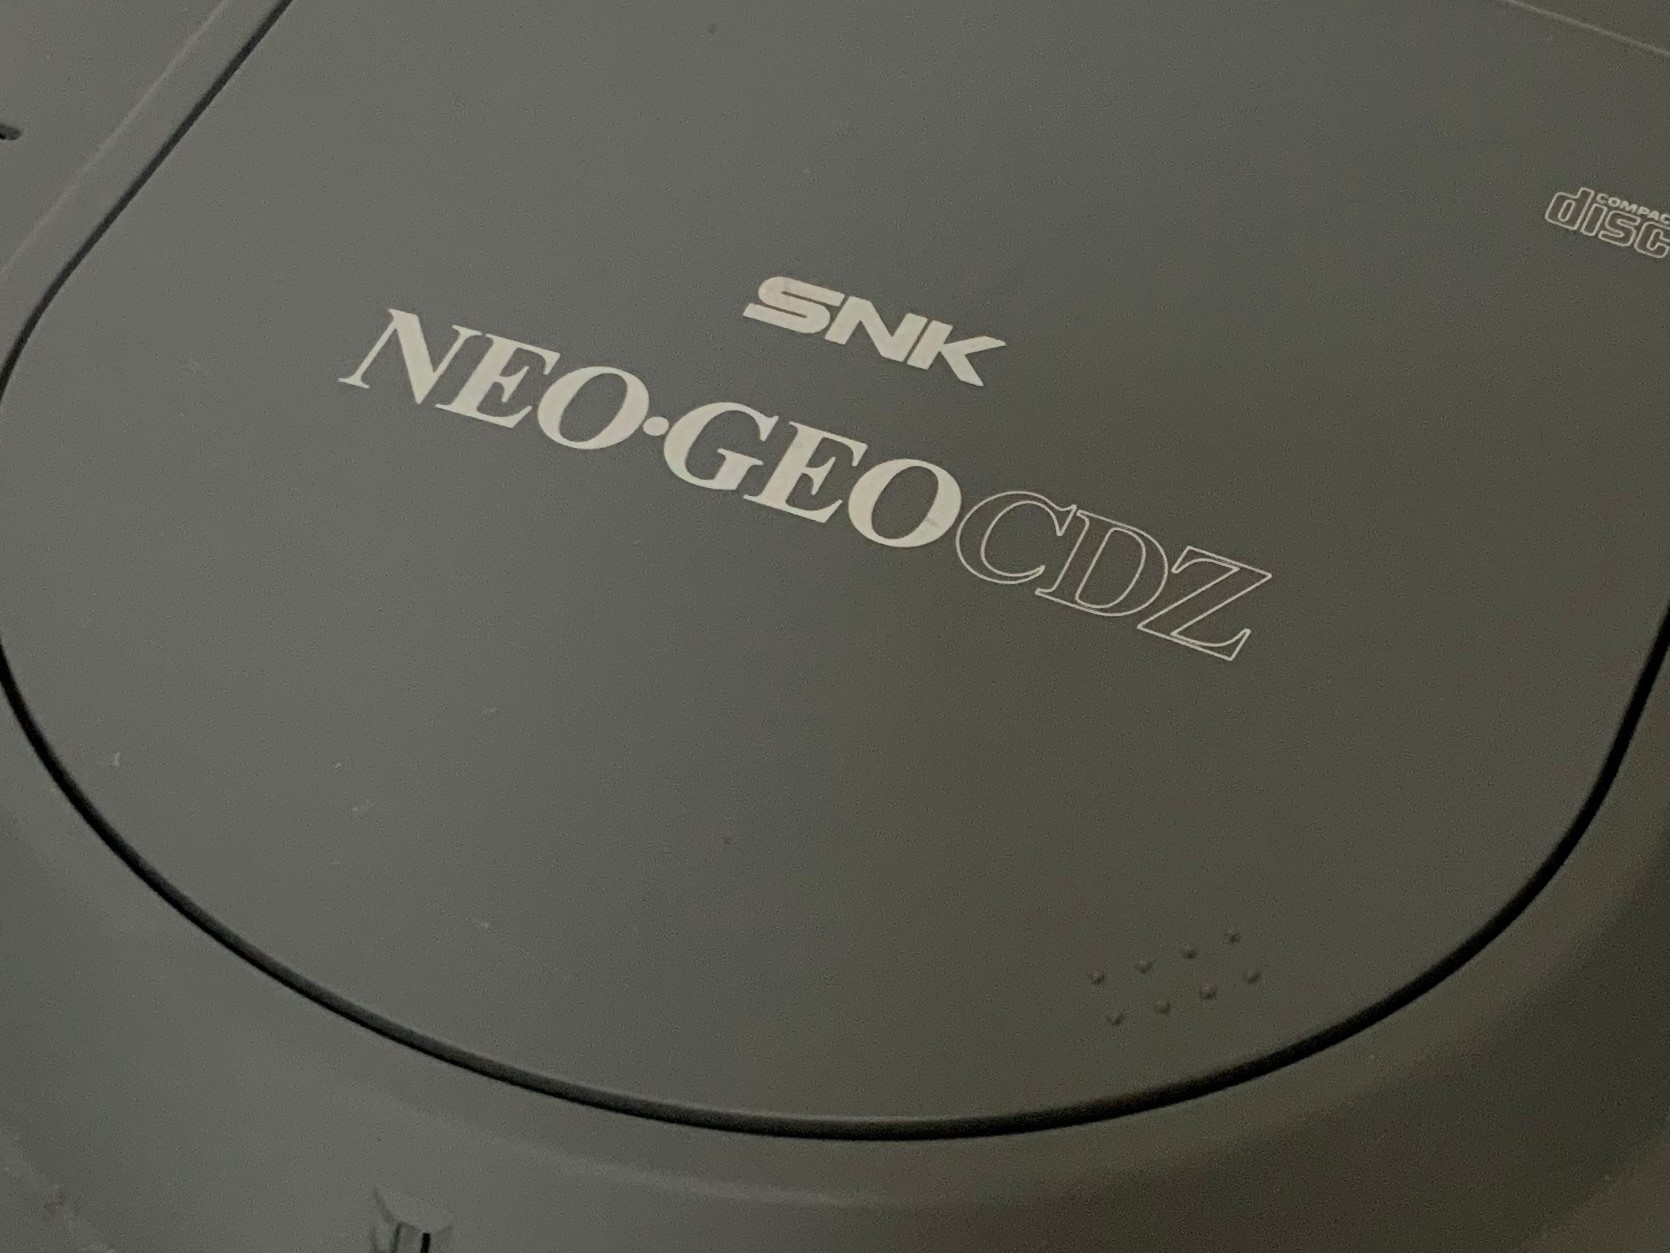 はじめて買った ネオジオCD-Zのソフト｜ゲームとマンガについてブログ